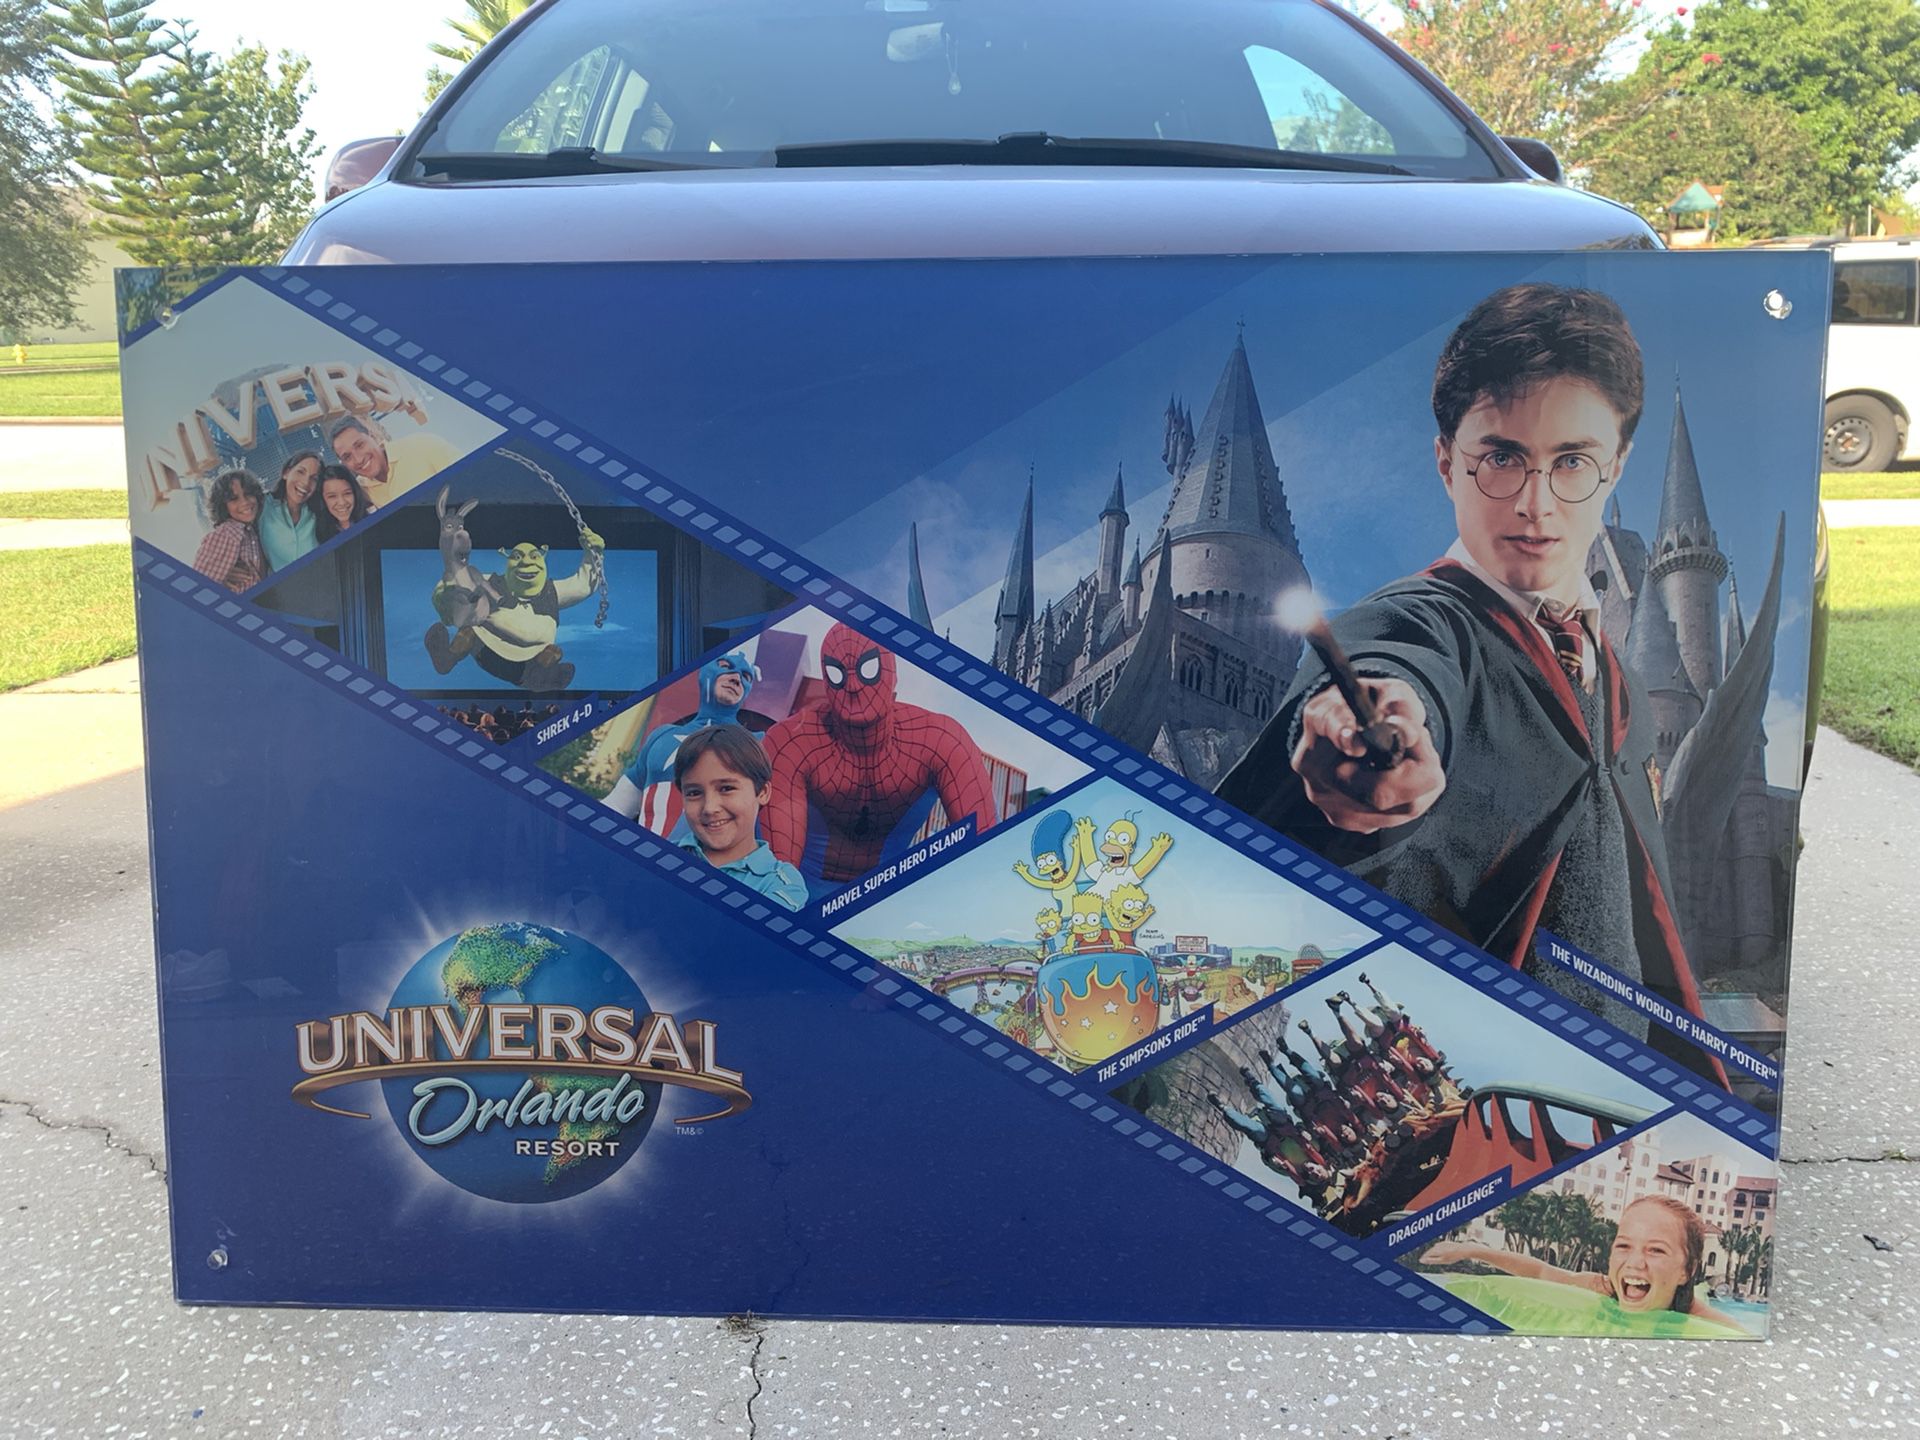 Universal Studios Acrylic Display